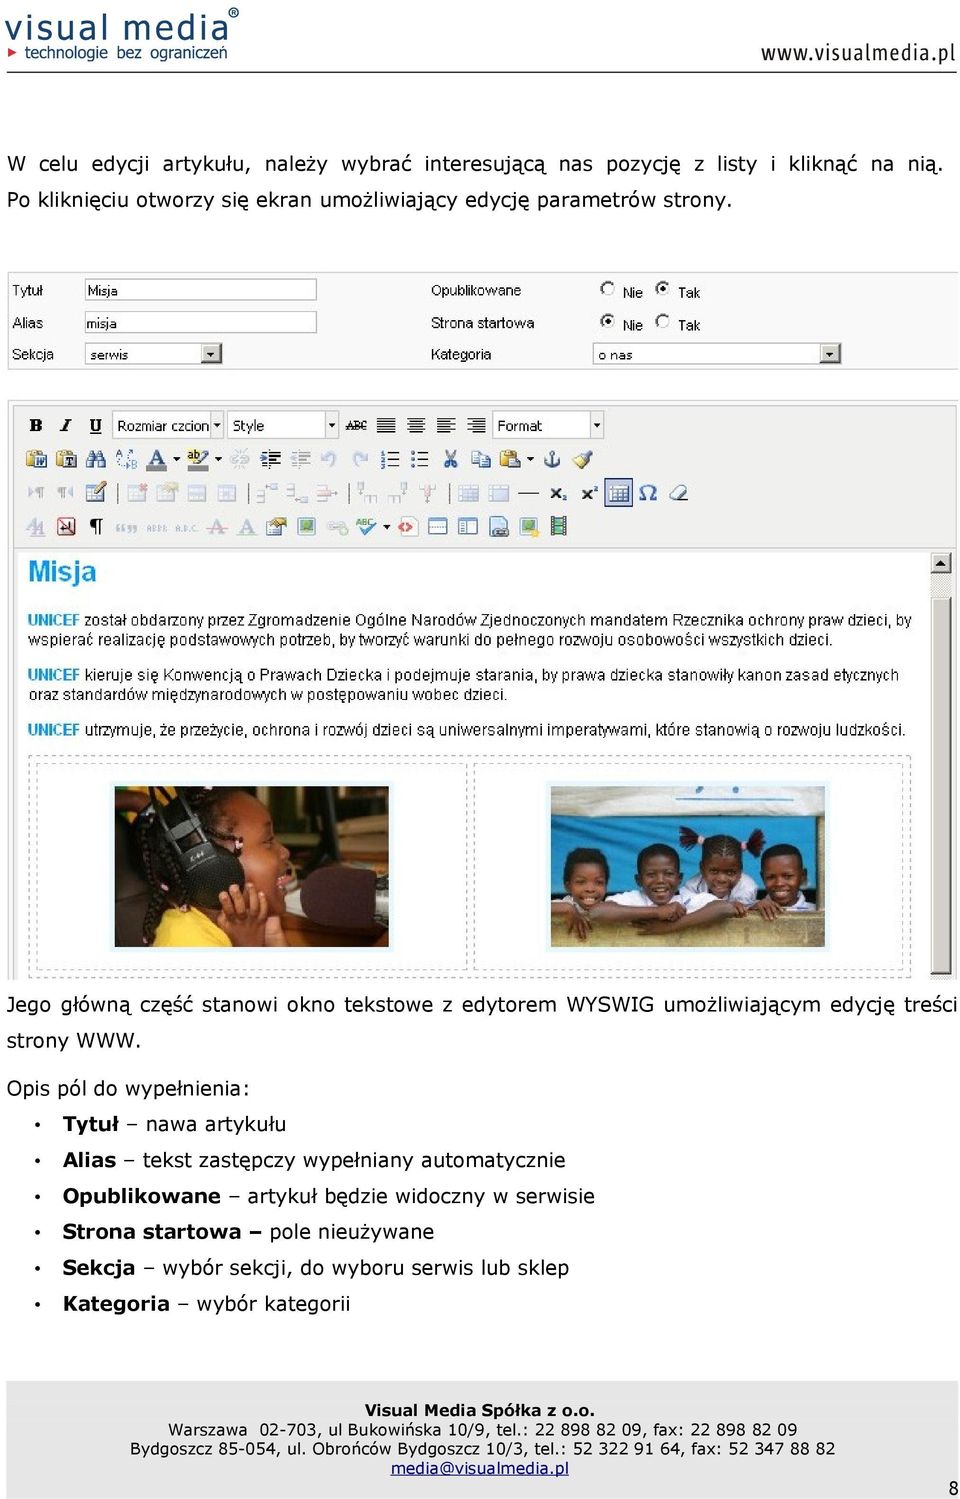 Jego główną część stanowi okno tekstowe z edytorem WYSWIG umożliwiającym edycję treści strony WWW.